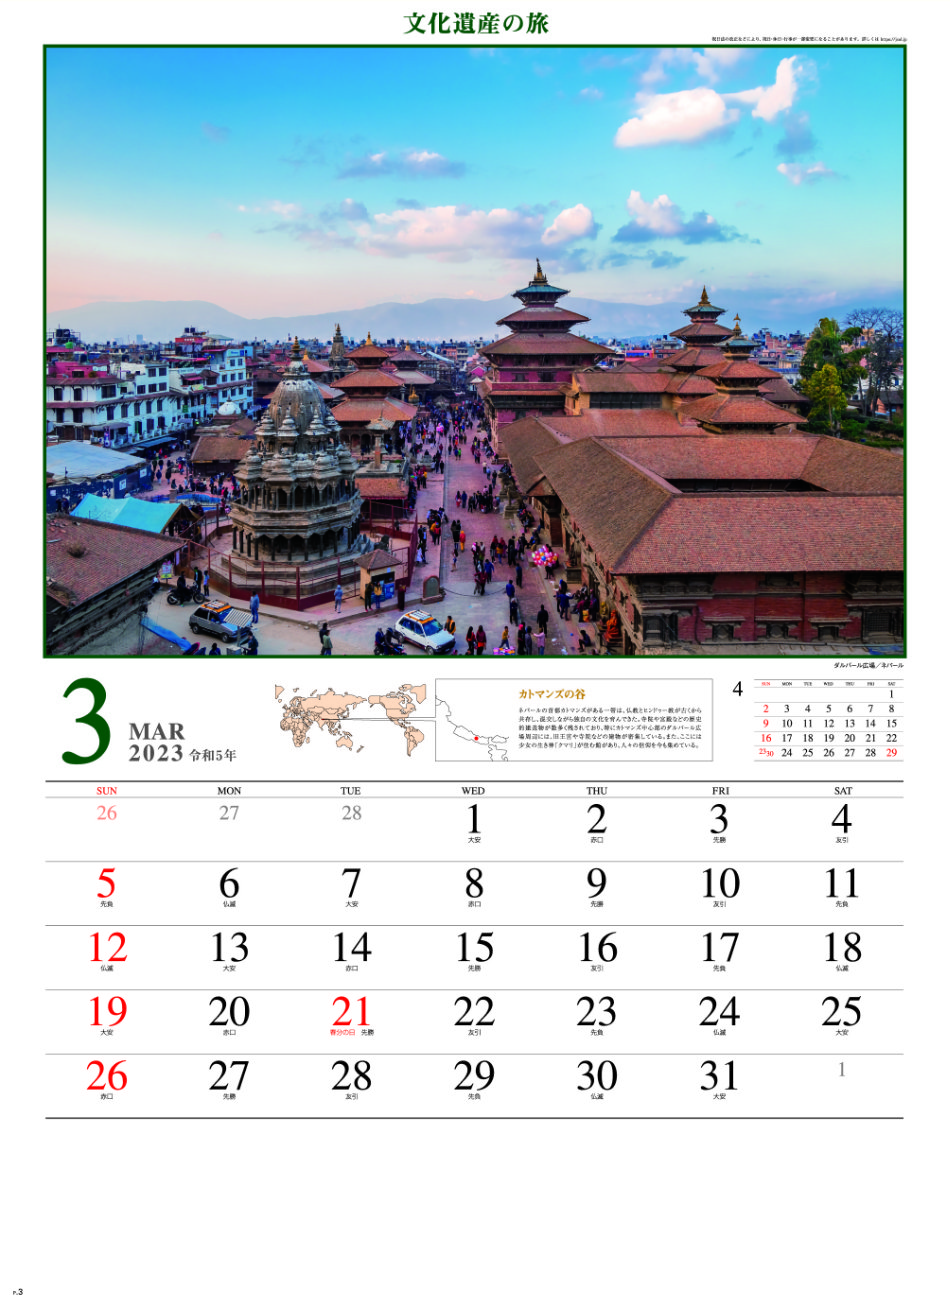 3月 ダルバール広場(ネパール) 文化遺産の旅(ユネスコ世界遺産） 2023年カレンダーの画像